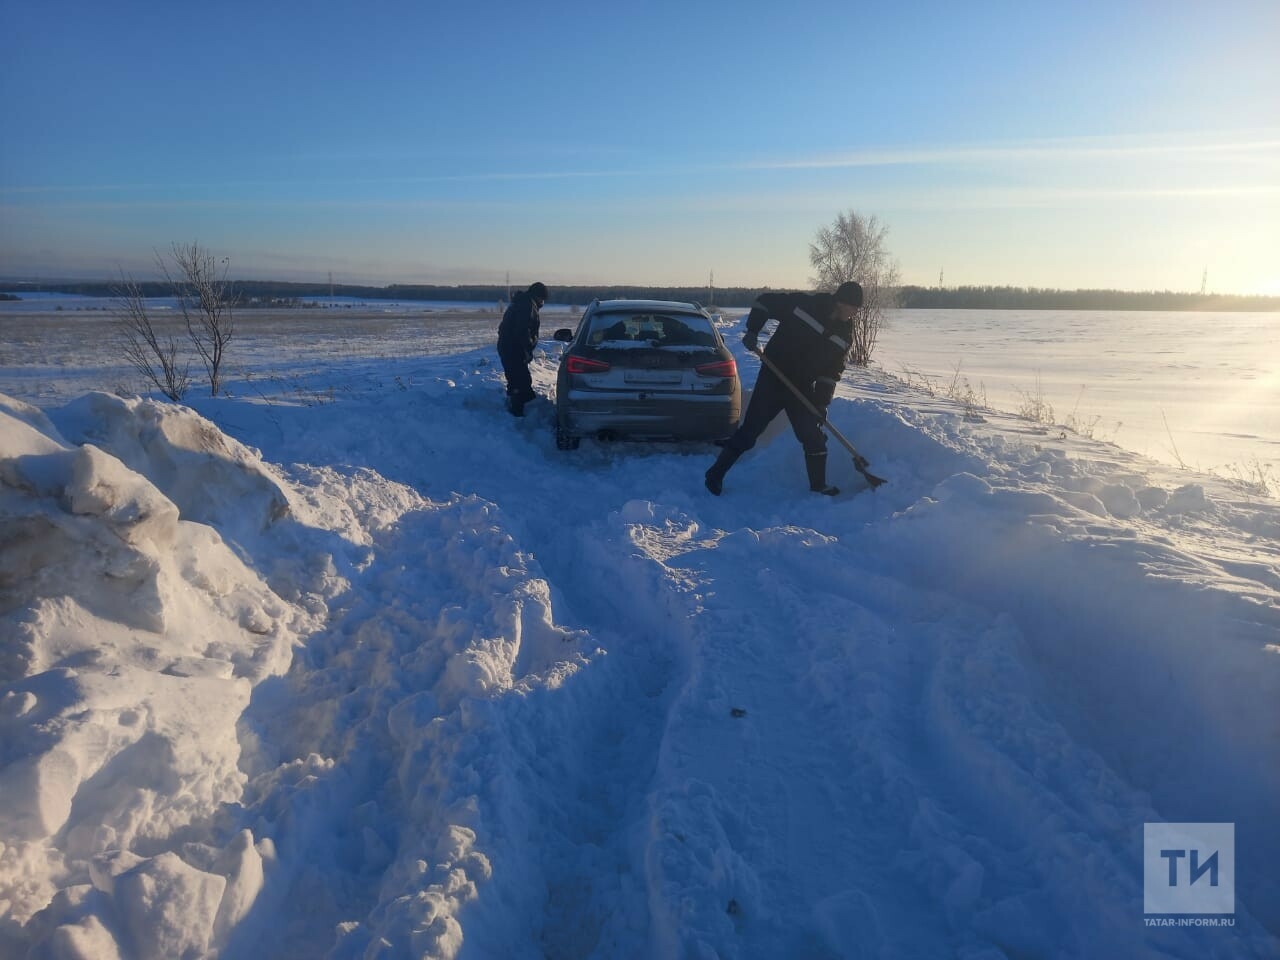 Спасатели помогли троим татарстанцам, авто которых увязло в поле в снегу